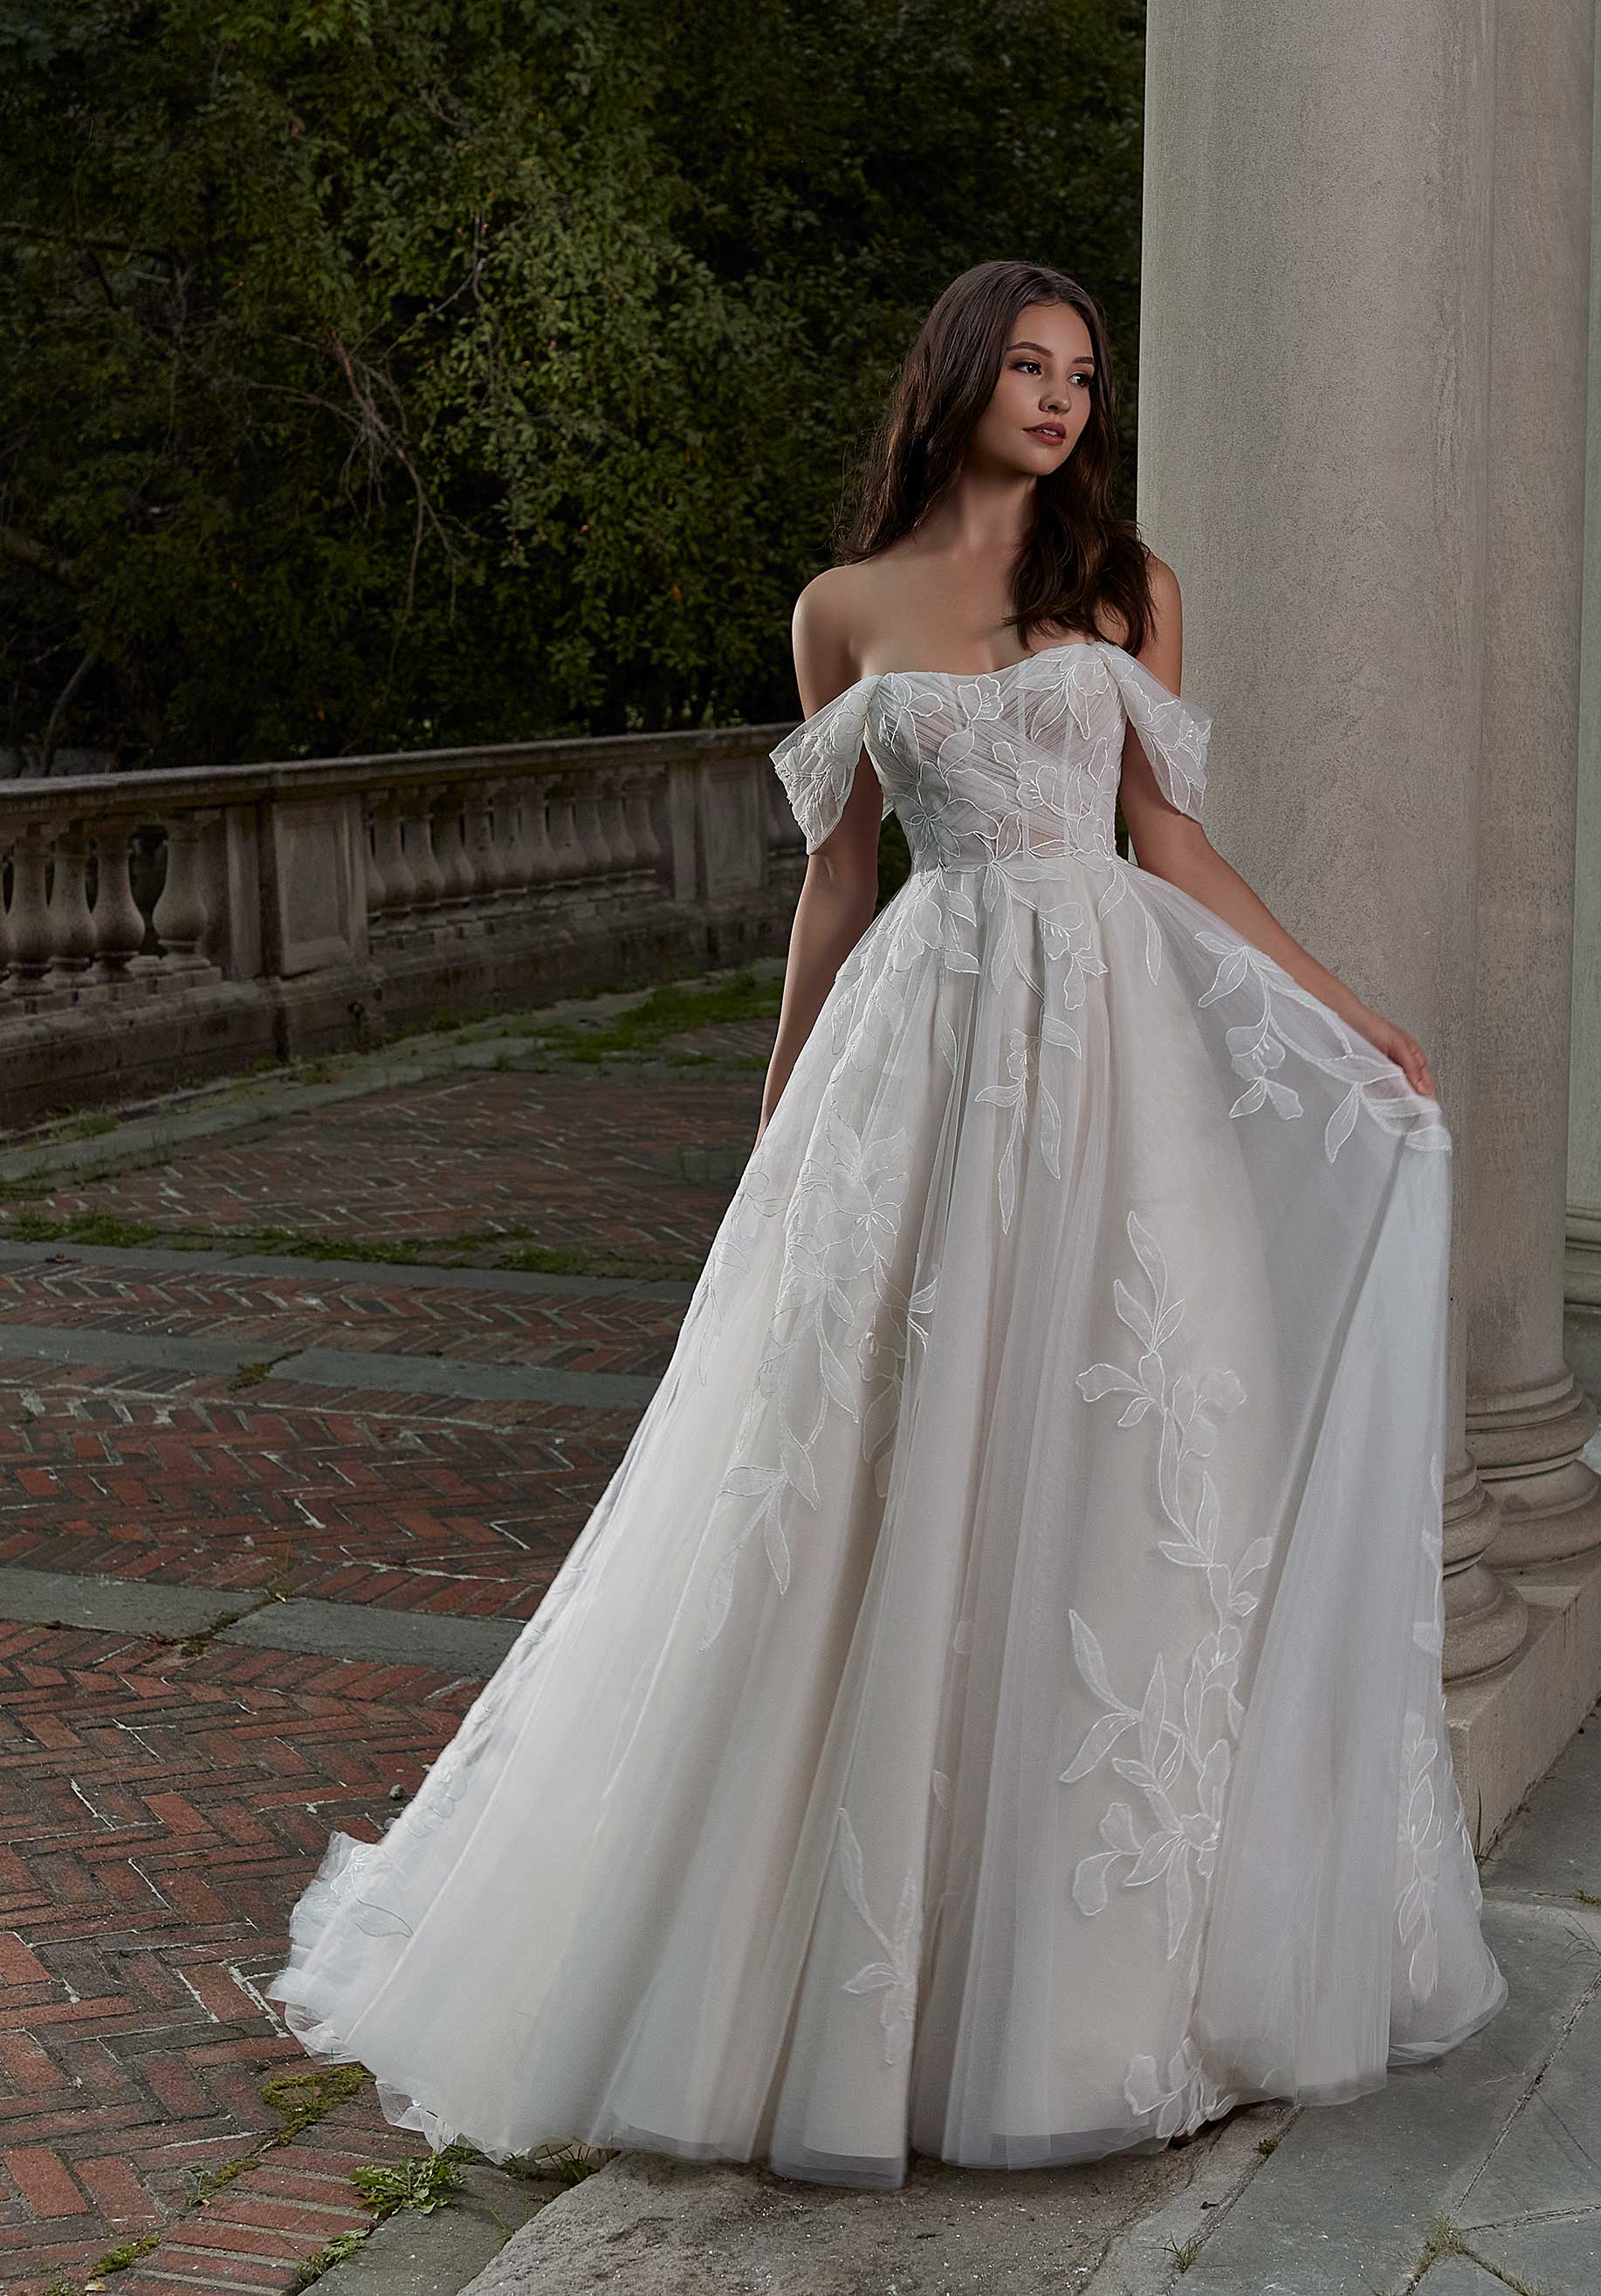 Wedding Dresses - 7000+ Stunning Wedding Dress Ideas | hitched.co.uk